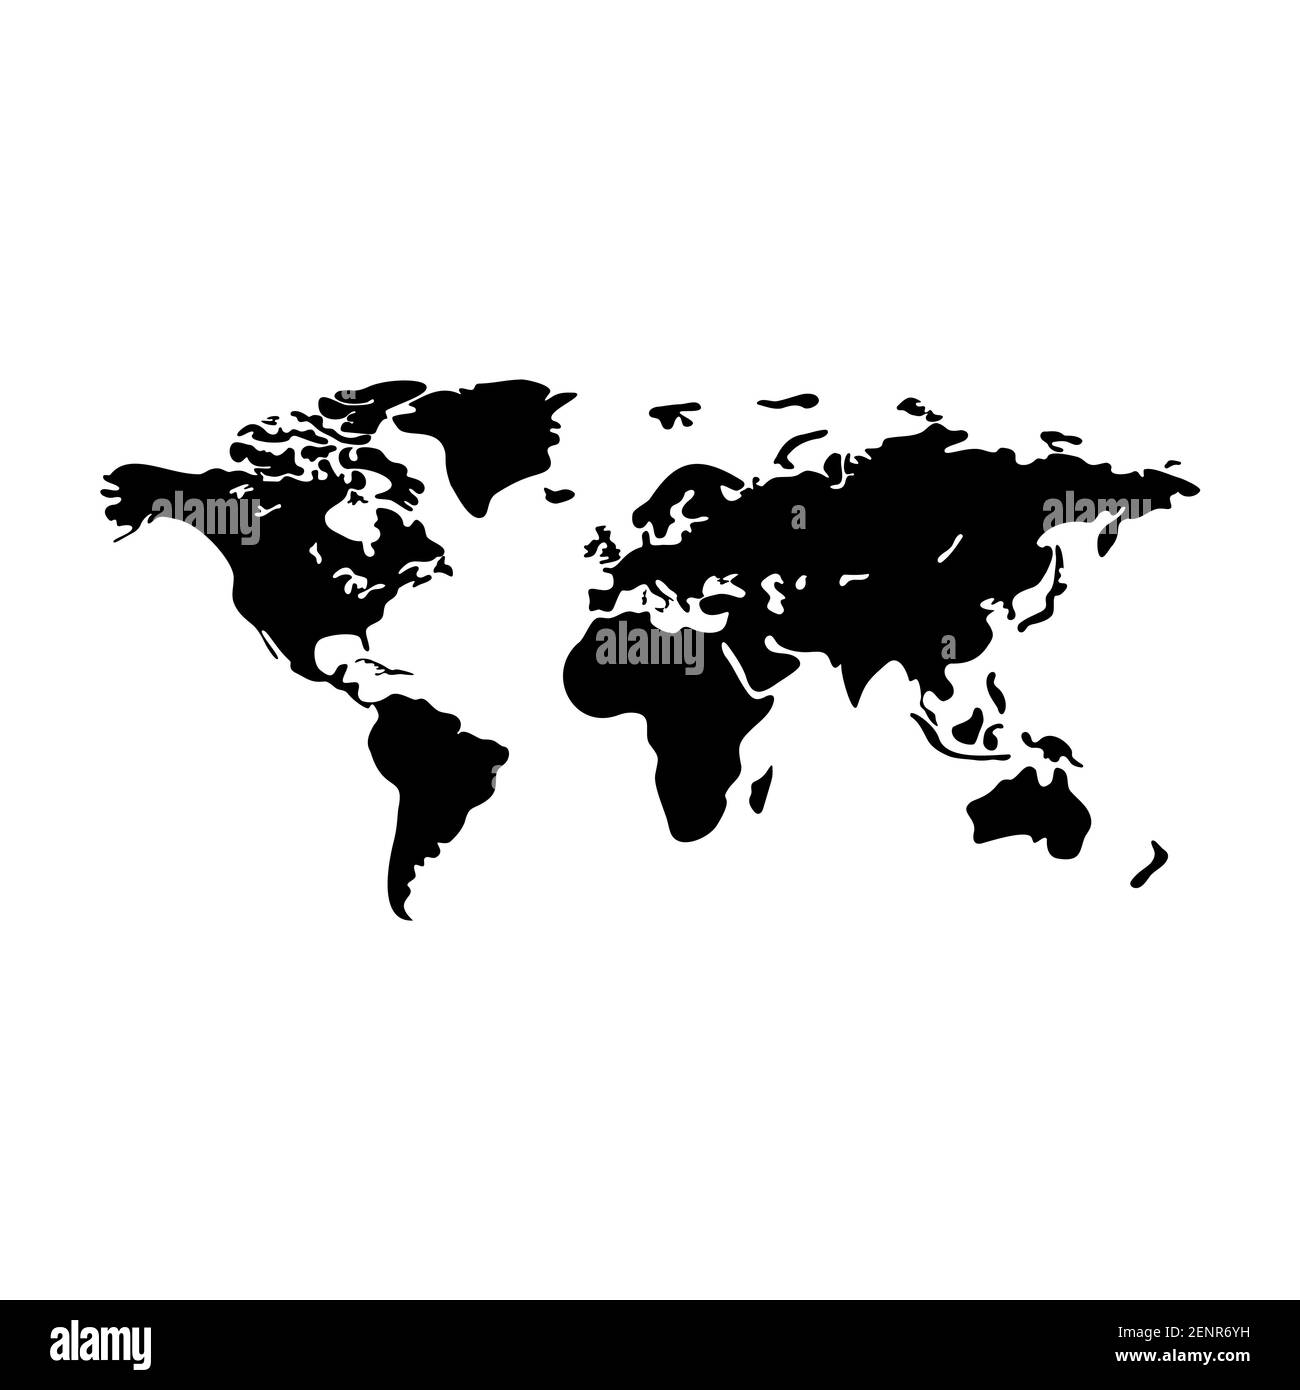 Vettore mappa del mondo moderno. Mappa terrestre sagoma vettoriale isolata su sfondo bianco. Modello di mappa piatta per modello di sito web, rapporto annuale, infografiche. Viaggia in tutto il mondo, silhouette della mappa sullo sfondo. Illustrazione vettoriale Illustrazione Vettoriale